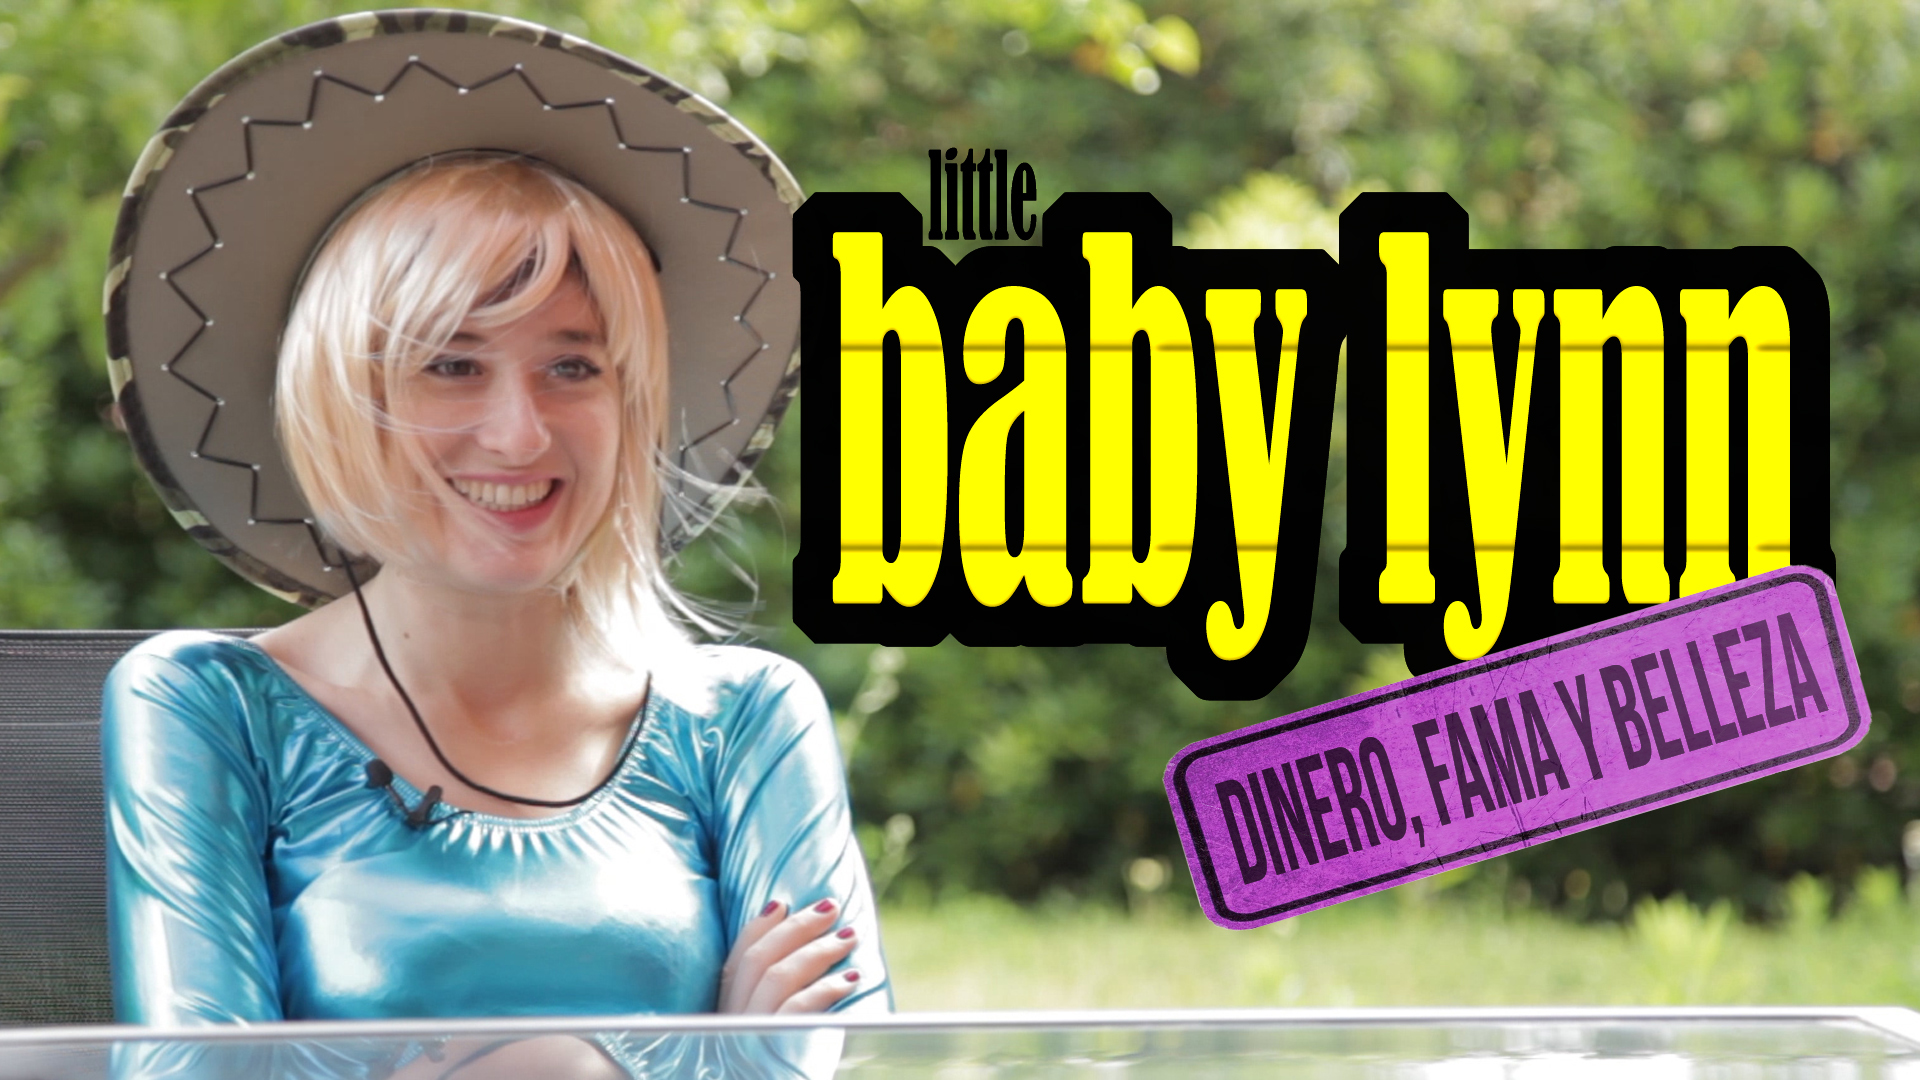 Temporada 1 Pequeña Baby Lynn: Dinero, Fama y Belleza - Soy una chica fitness | Living Postureo